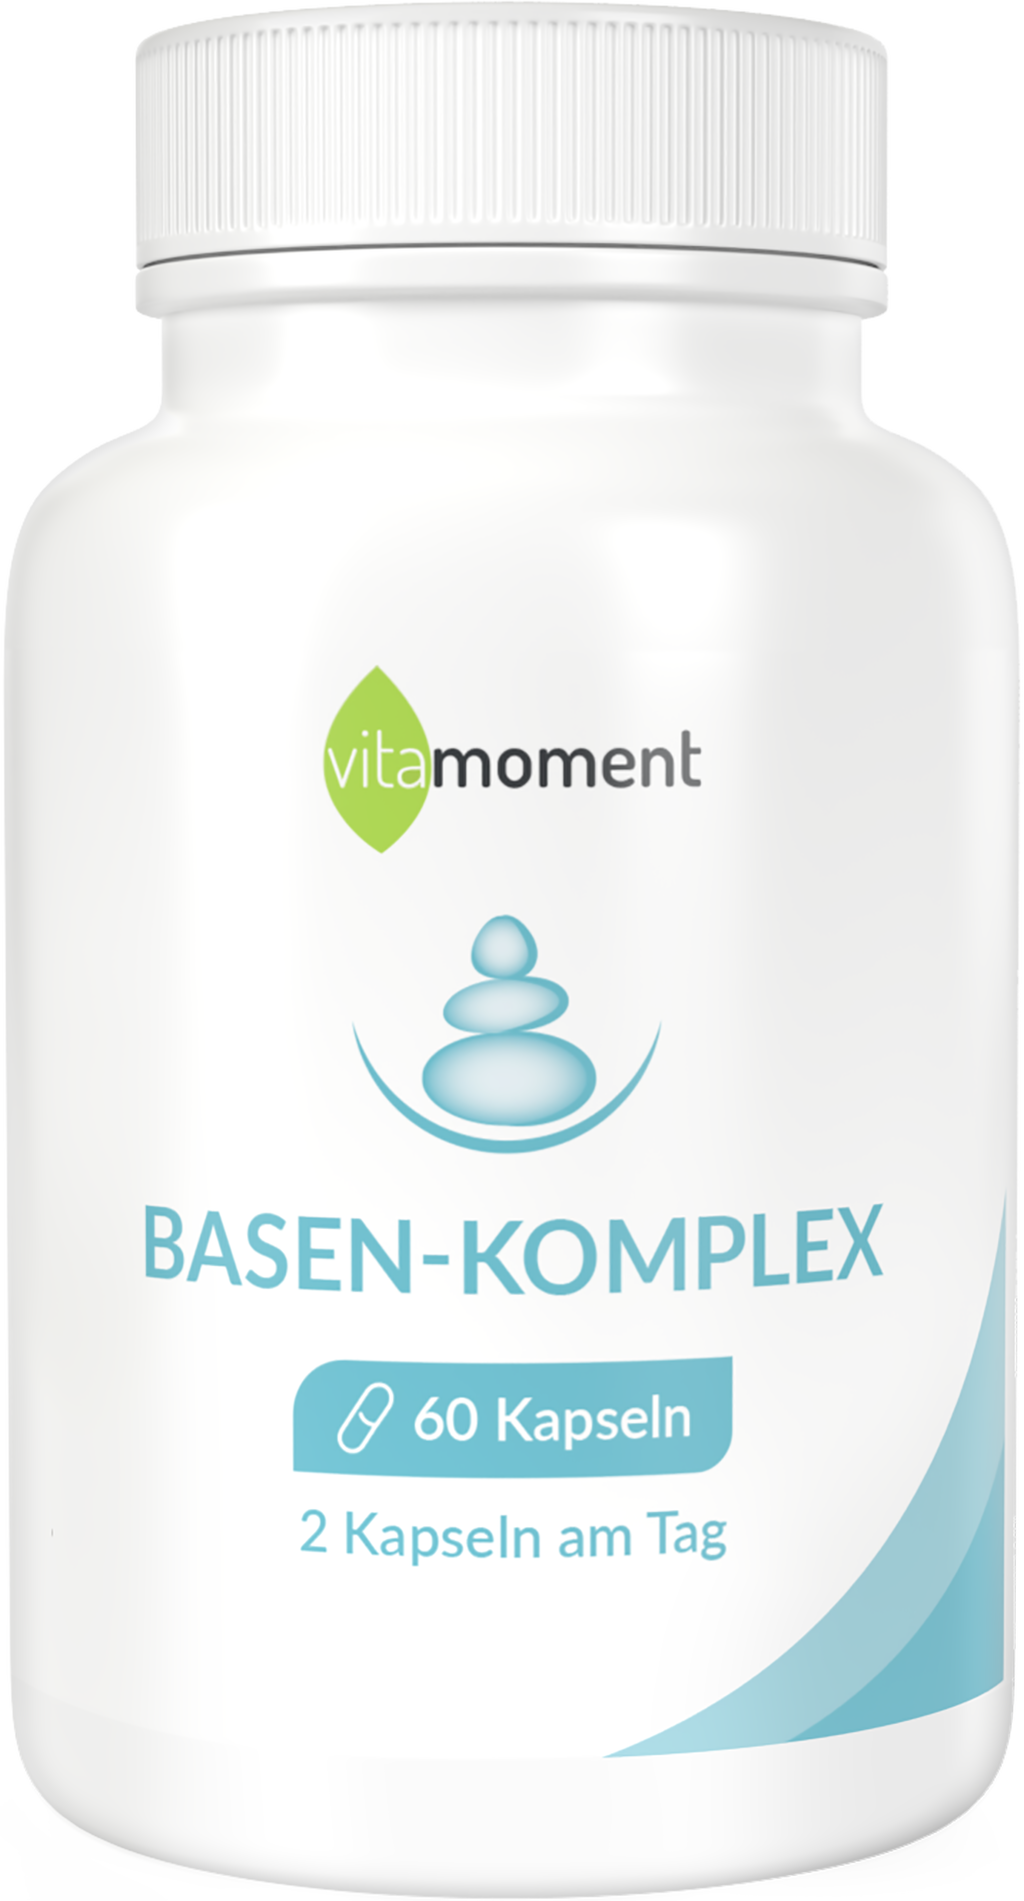 Basen-Komplex - VitaMoment Produkt